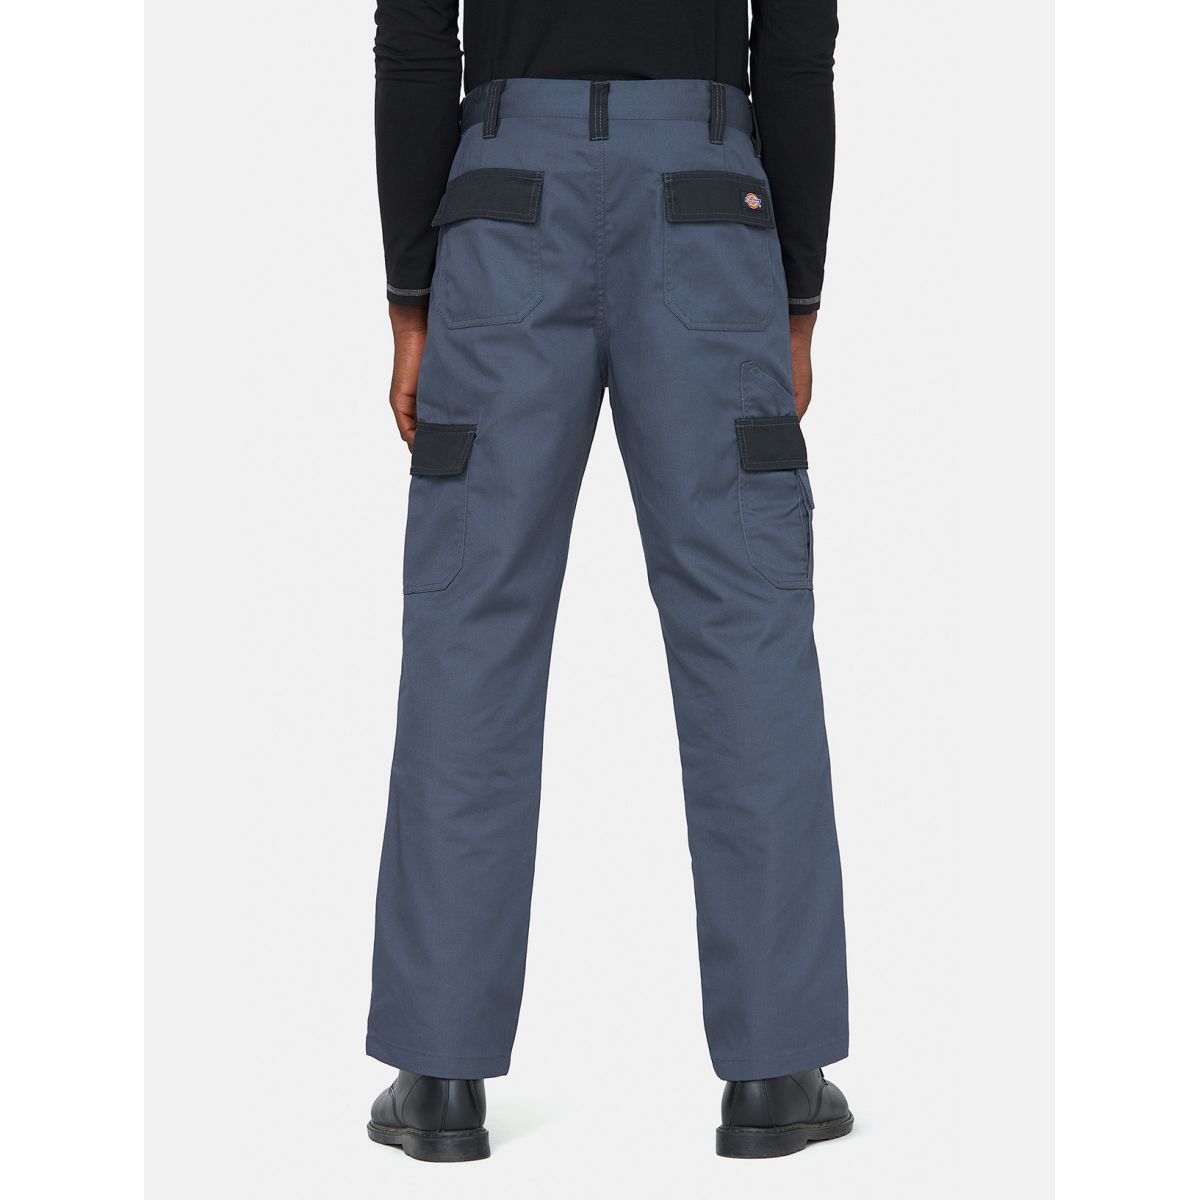 Pantalon Everyday Gris et noir- Dickies - Taille 52 1